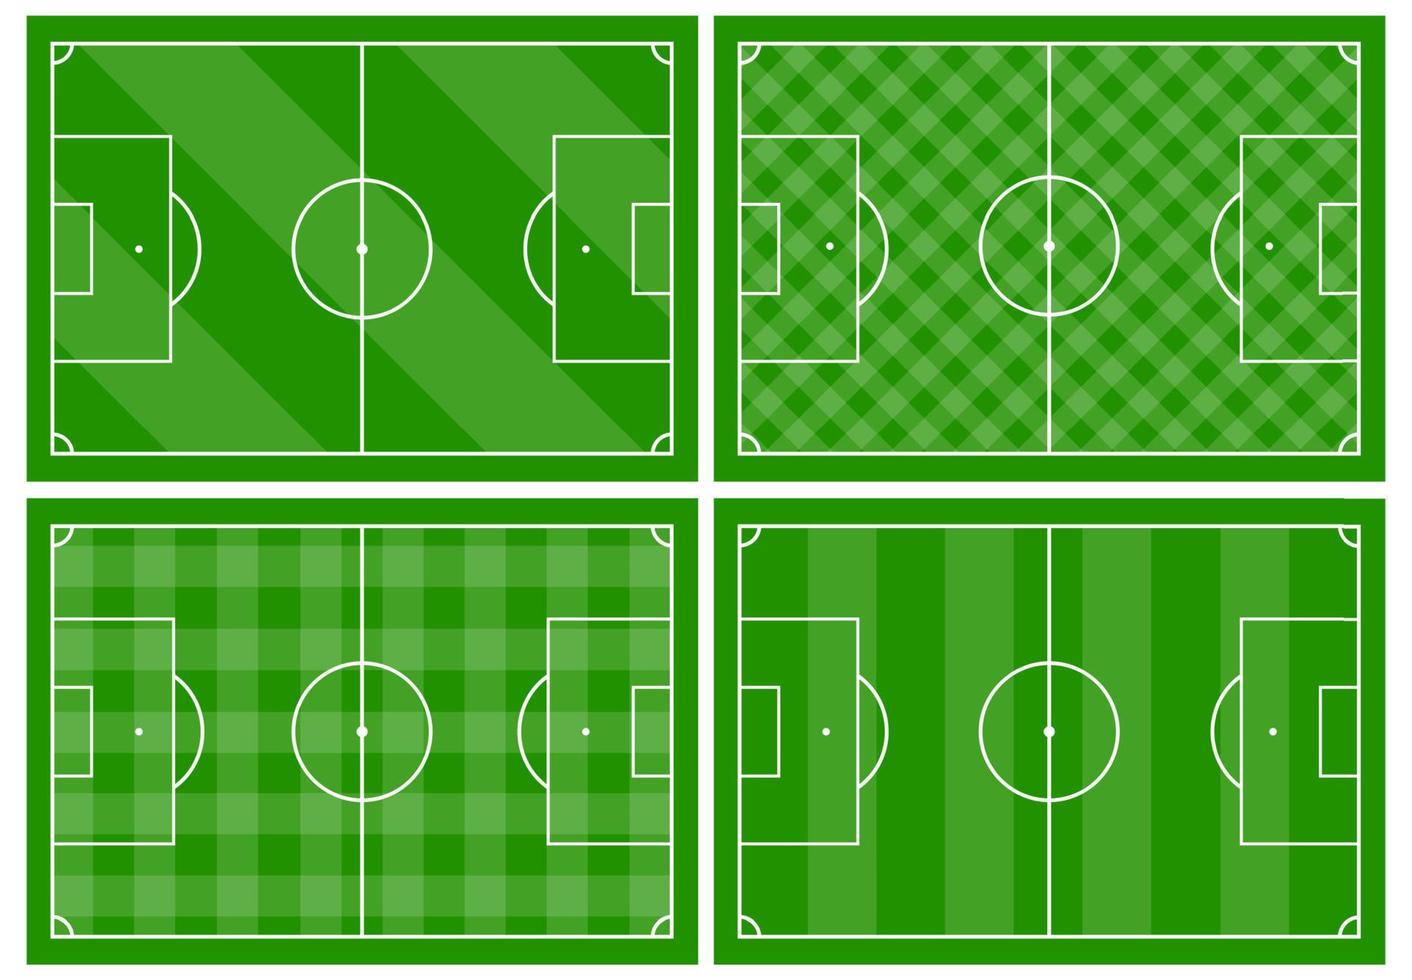 reeks van vier Amerikaans voetbal velden met verschillend groen gras ornamenten. voetbal veld- voor spelen. vector illustratie